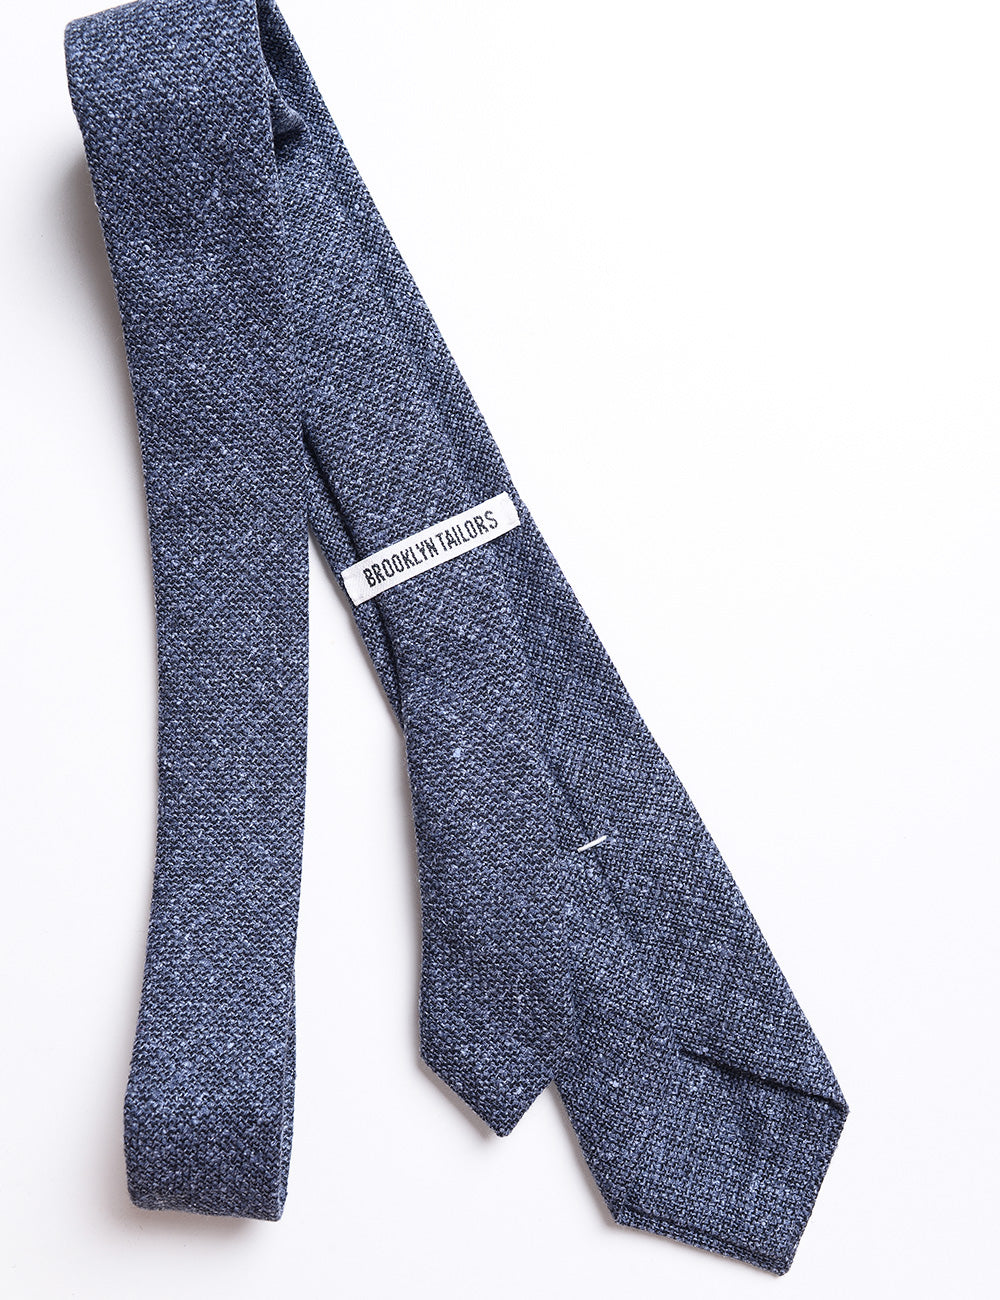 Back detail of Textured Wool Tie - Bluestone